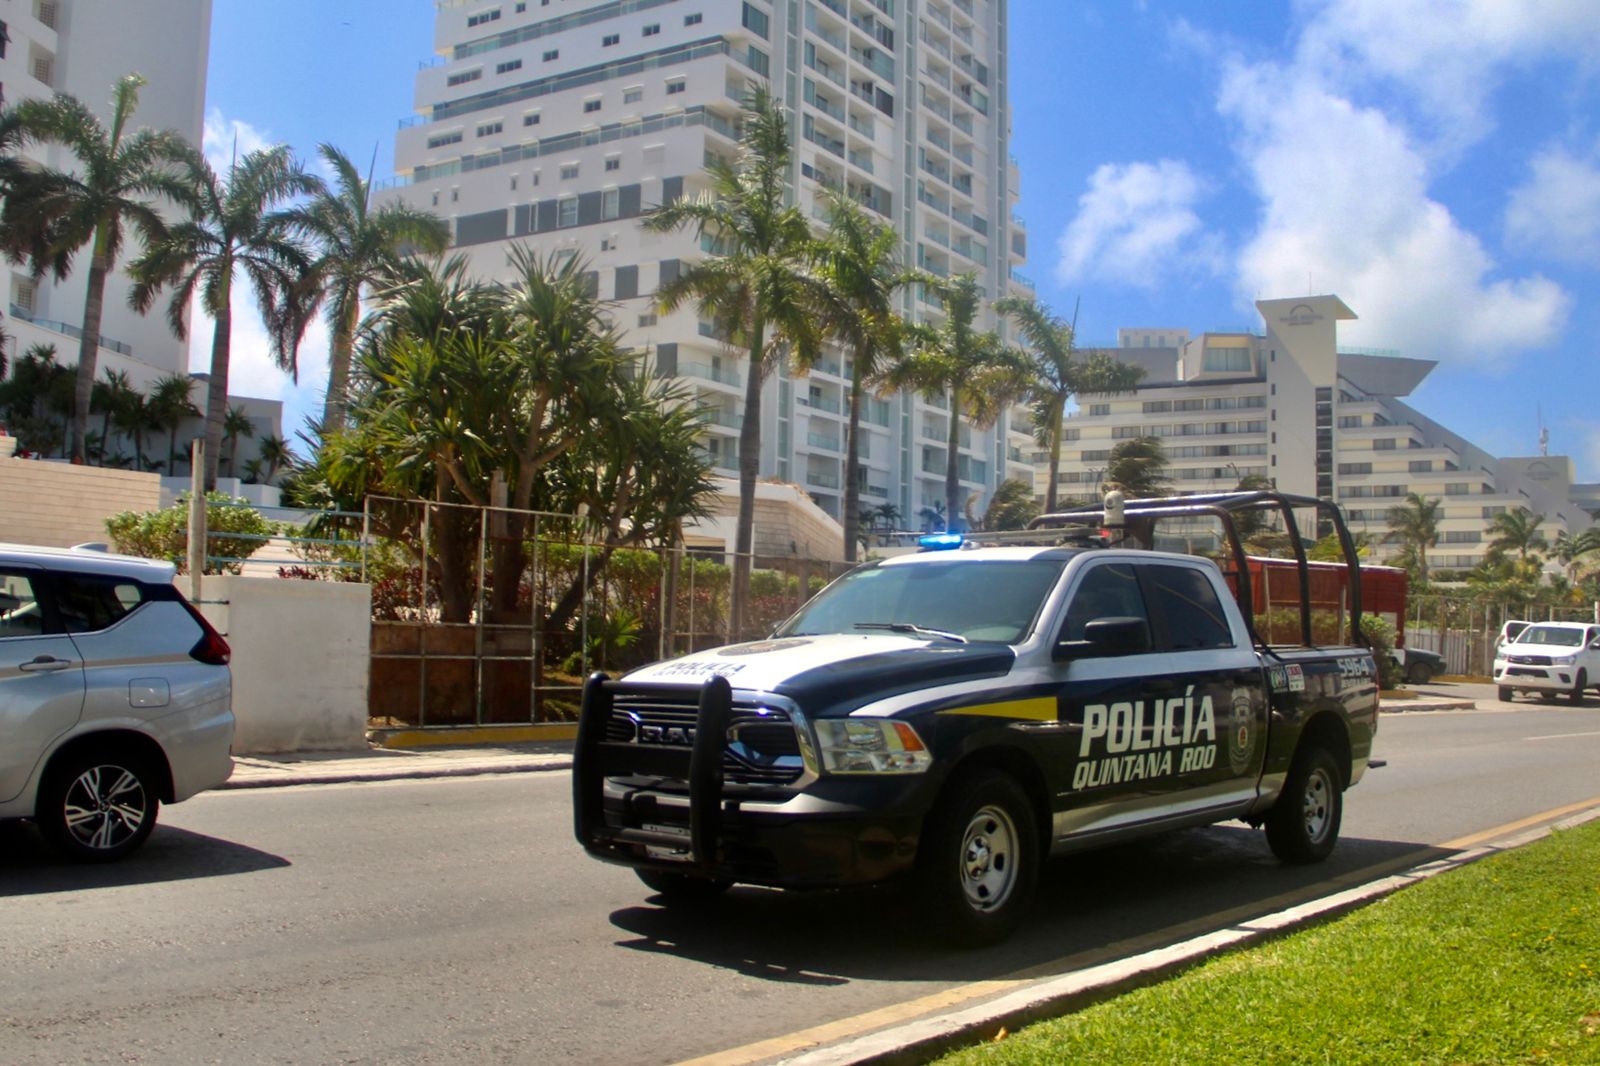 Intentan secuestrar a un obrero en la Zona Hotelera de Cancún